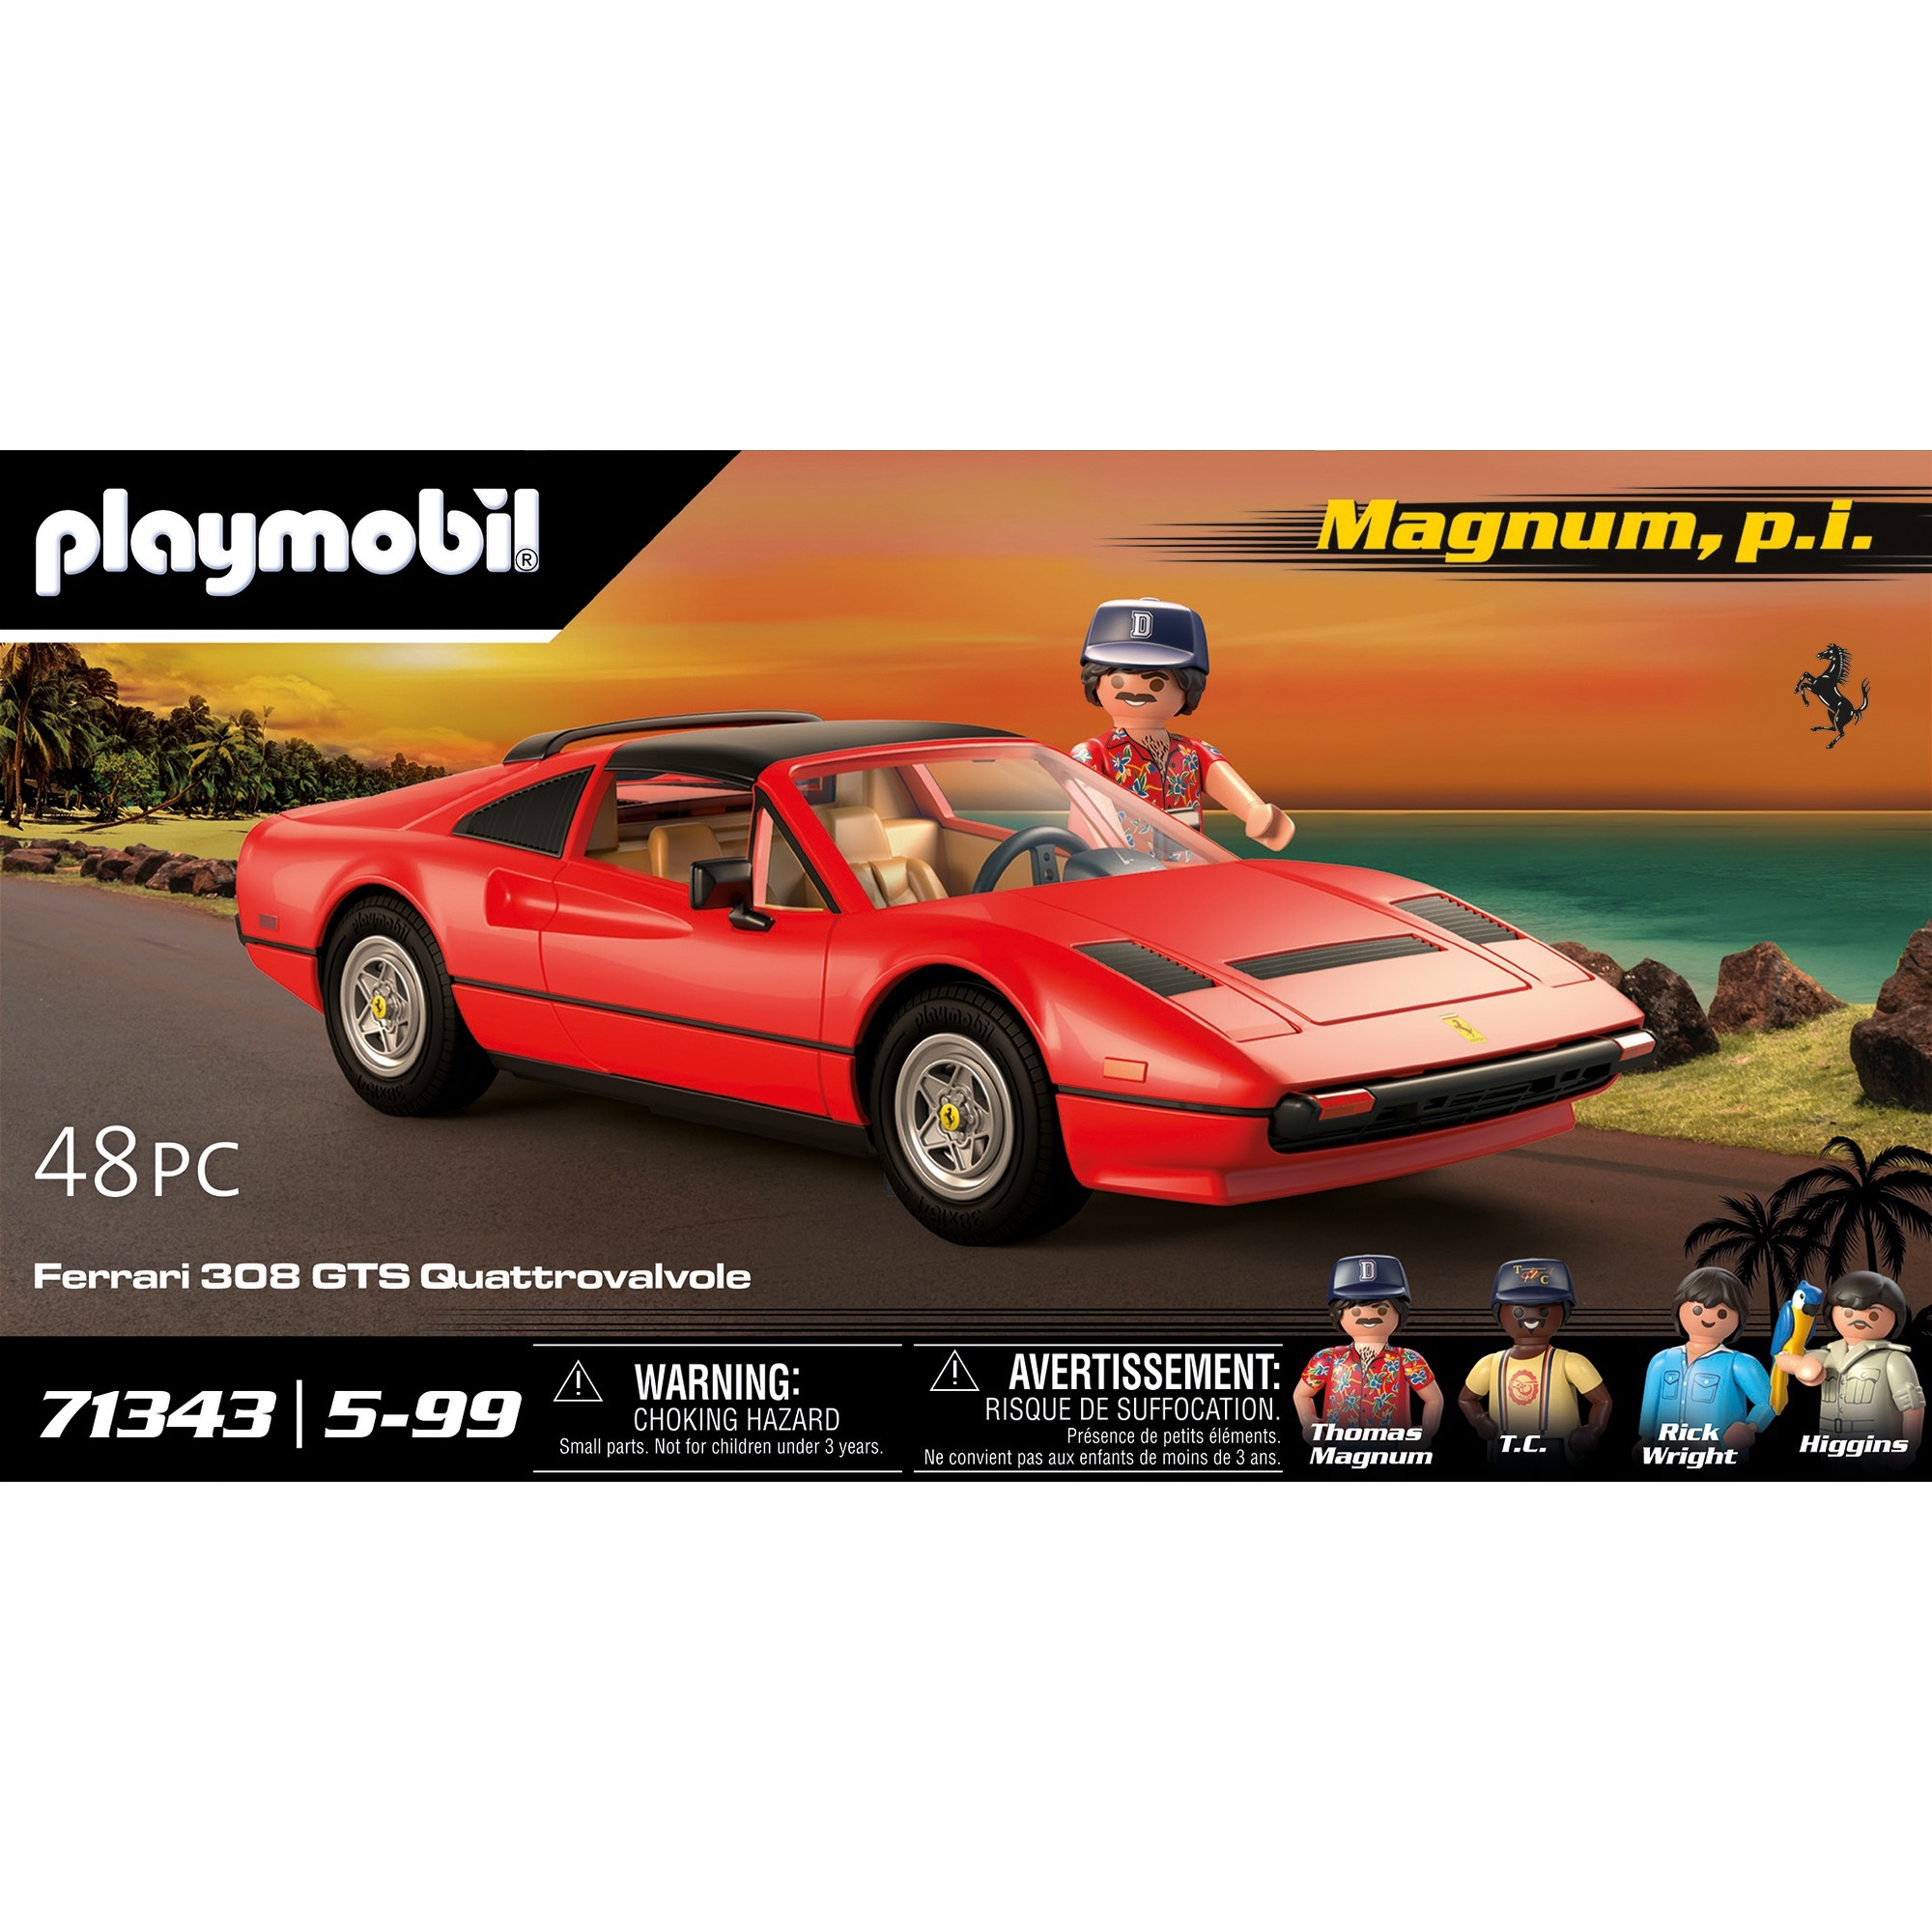 Playmobil Magnum, s.I. - Ferrari 308 GTS Quattrovalvole - 71343